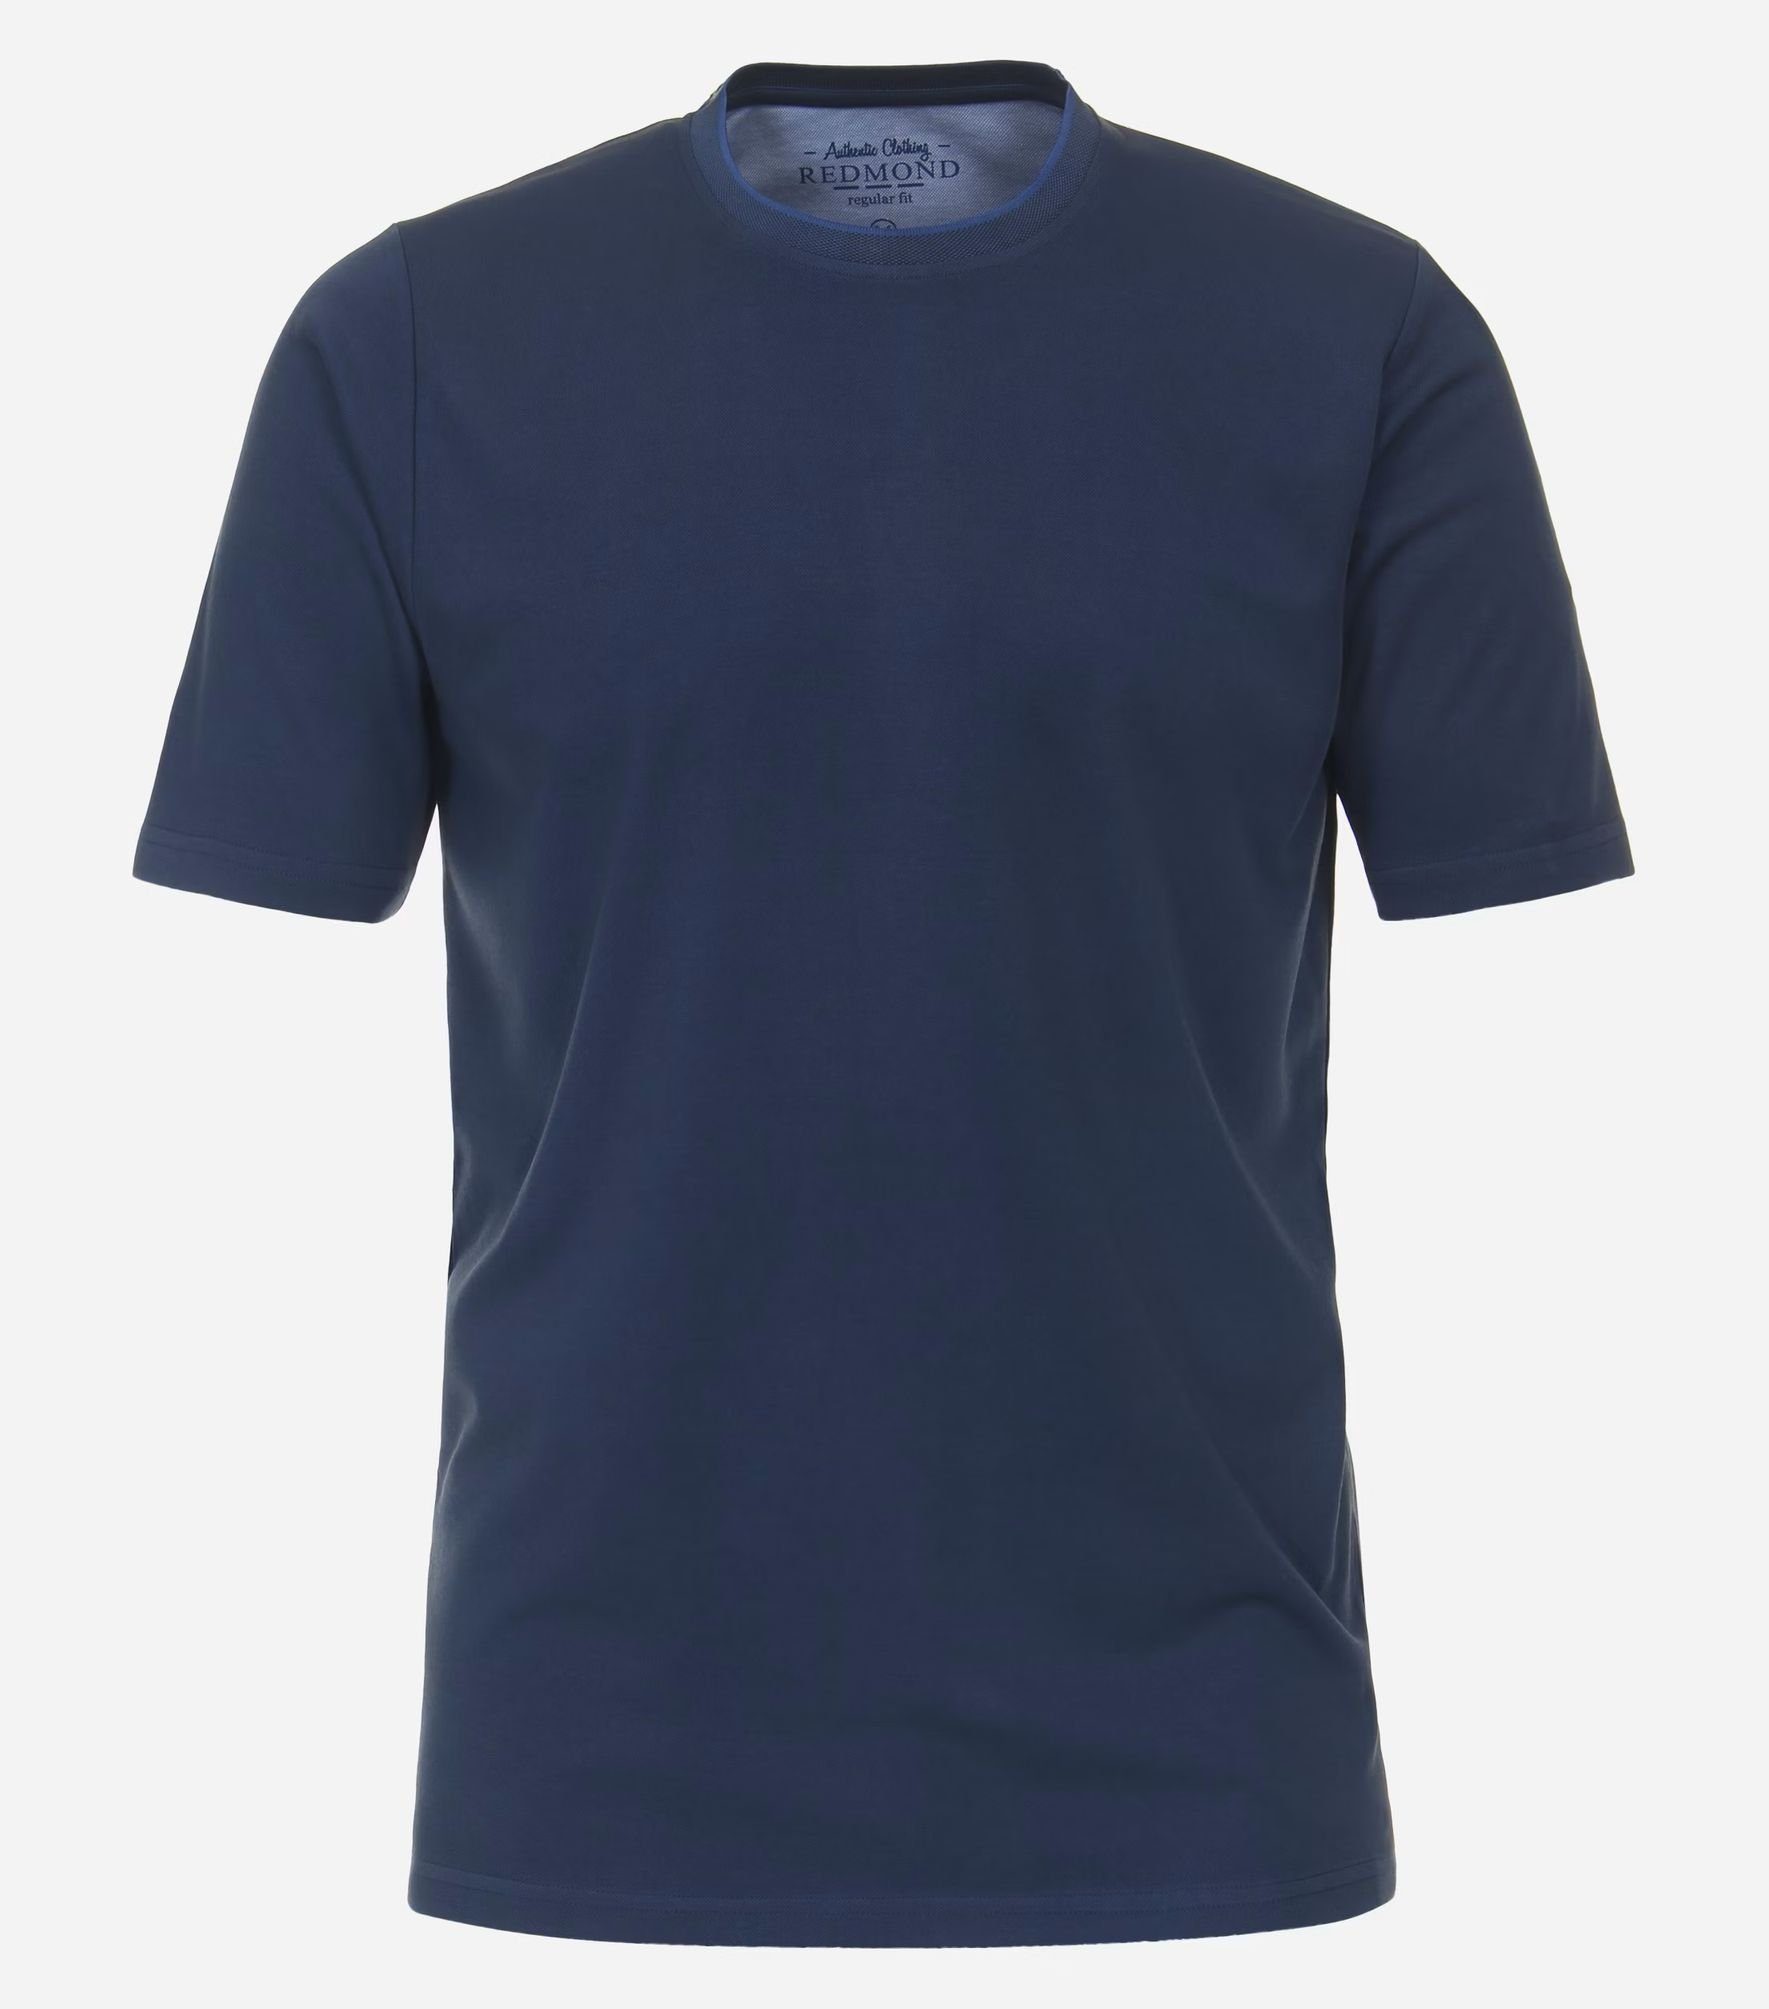 Blau(100) 231930650 T-Shirt pflegeleicht Redmond